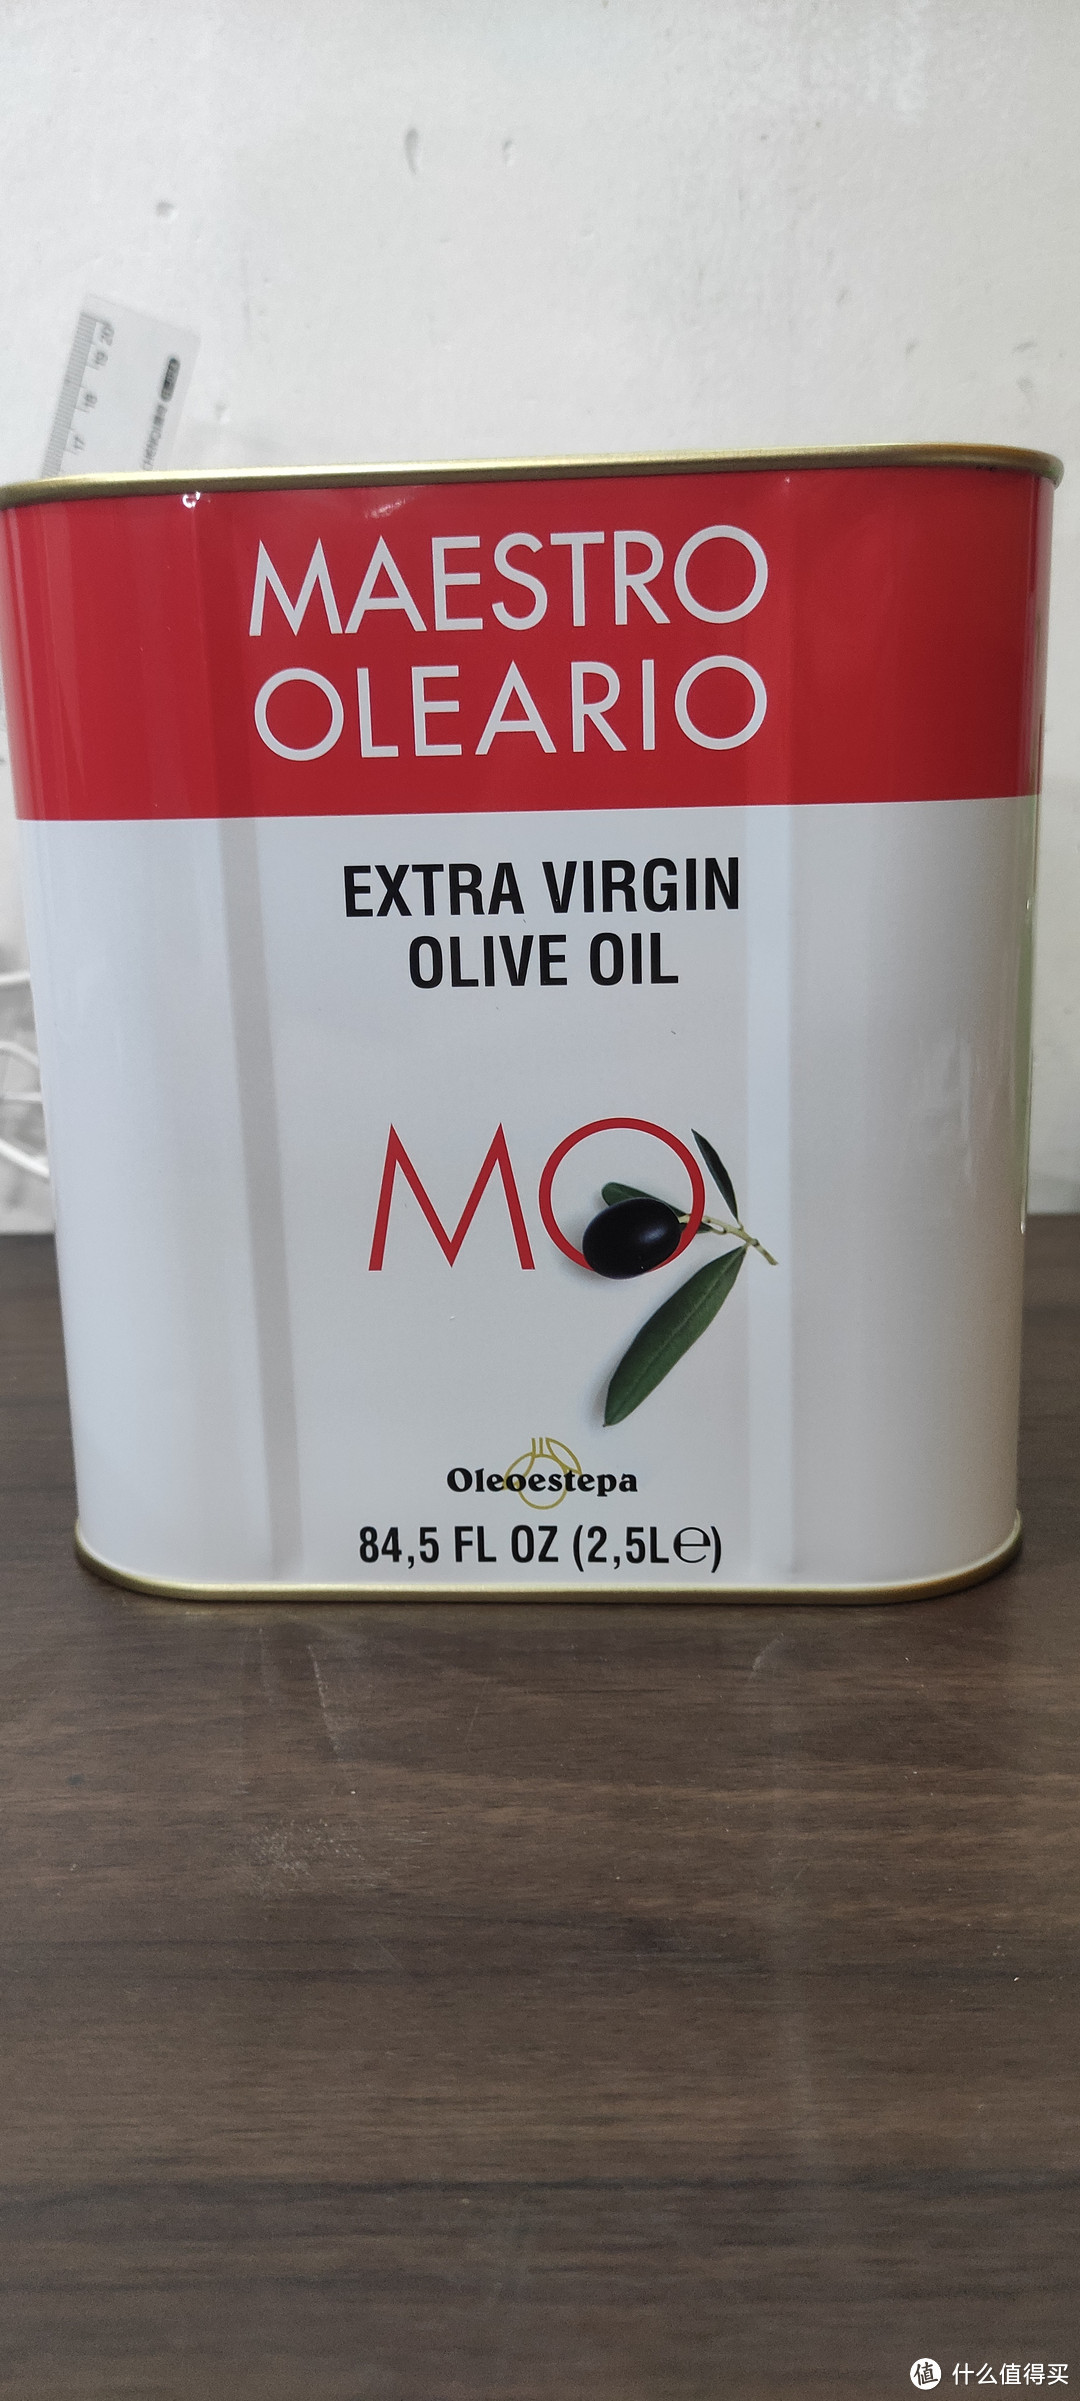 最健康，最适合人体的食用油是什么？当然是橄榄油啦！特级初榨橄榄油好不好？